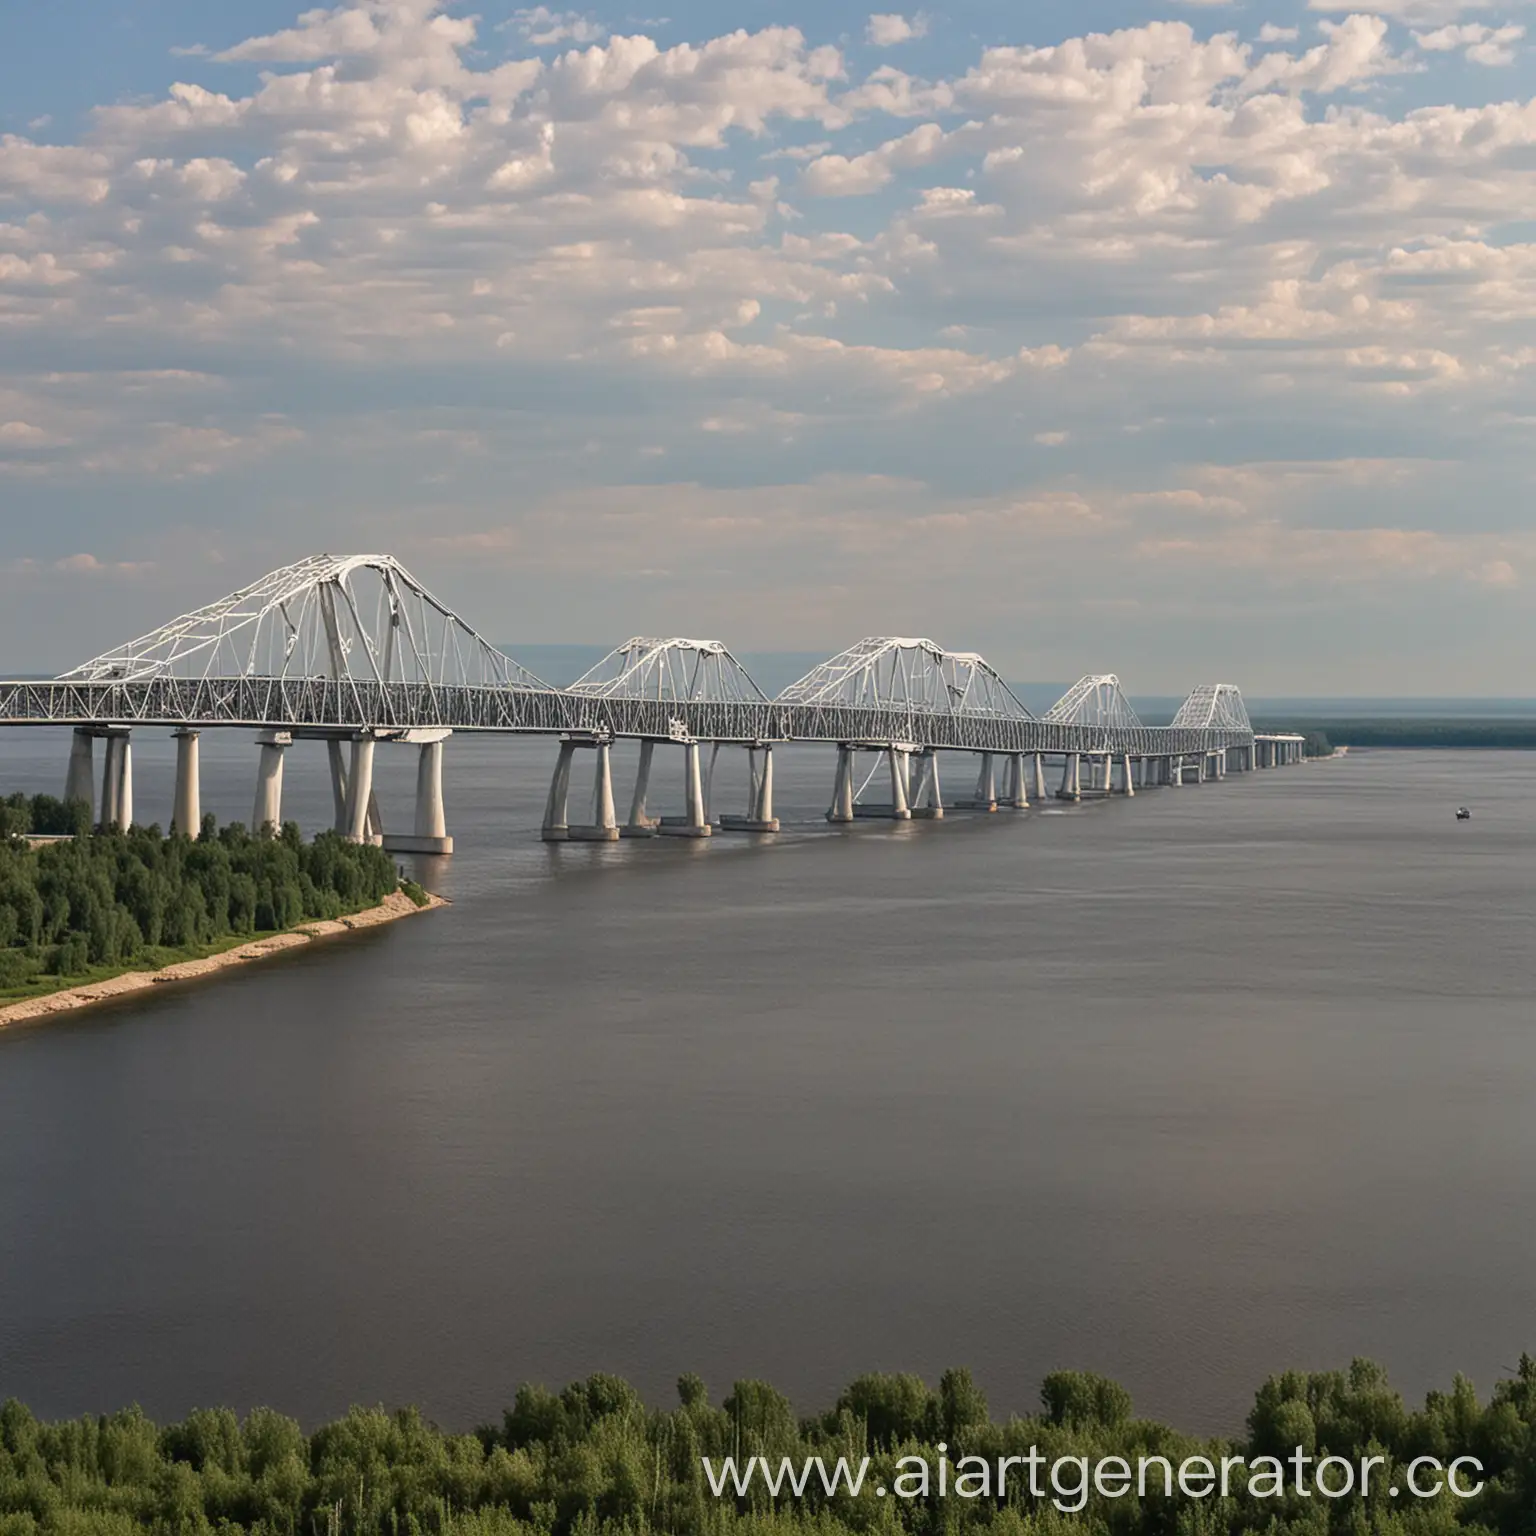 Saratovsky-Bridge-over-Volga-River-Majestic-Architectural-Marvel